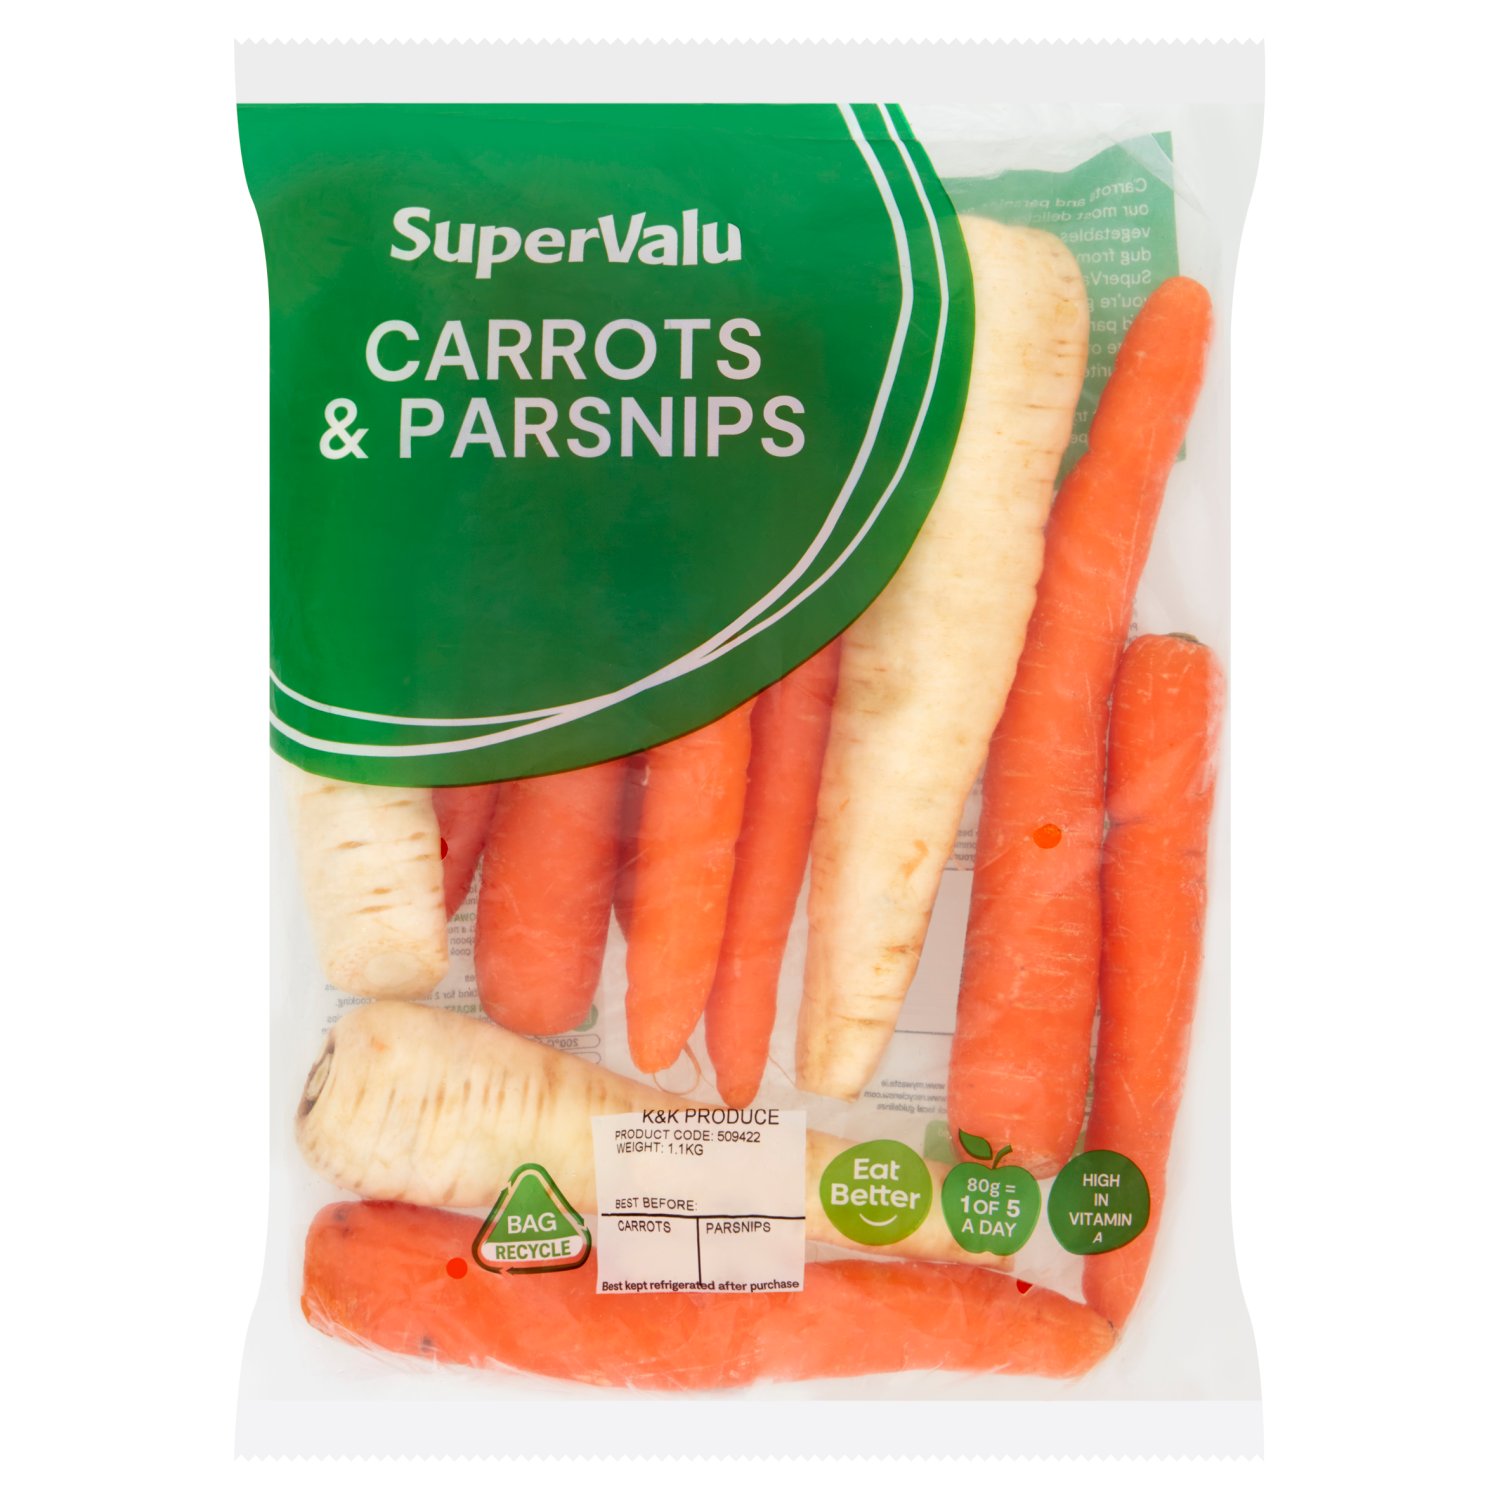 SuperValu Carrots & Parsnips (1.1 kg)